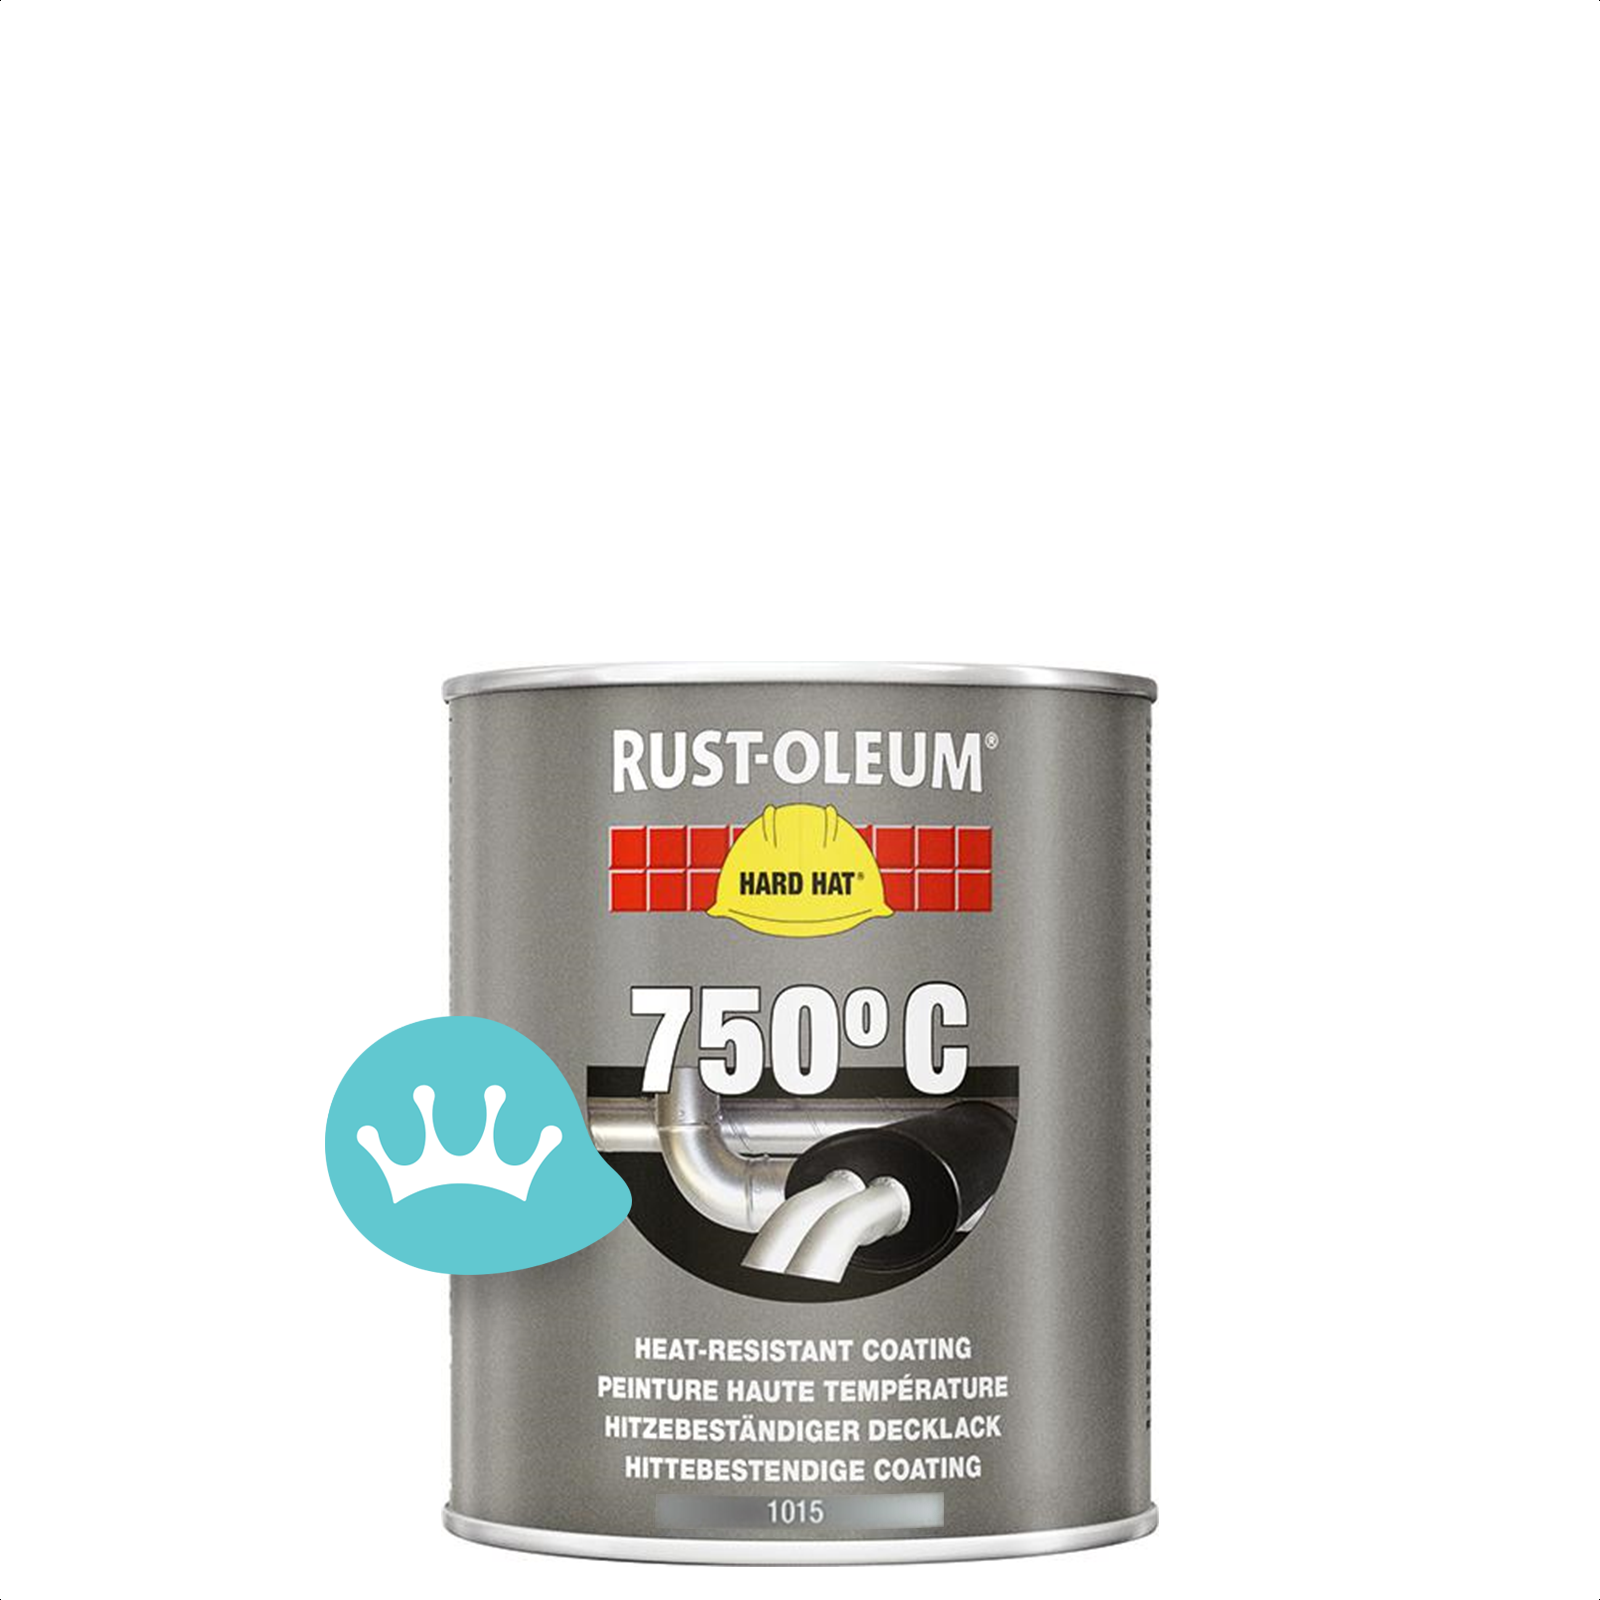 Peinture haute température Rust-oleum Hard Hat® aluminium 750ml